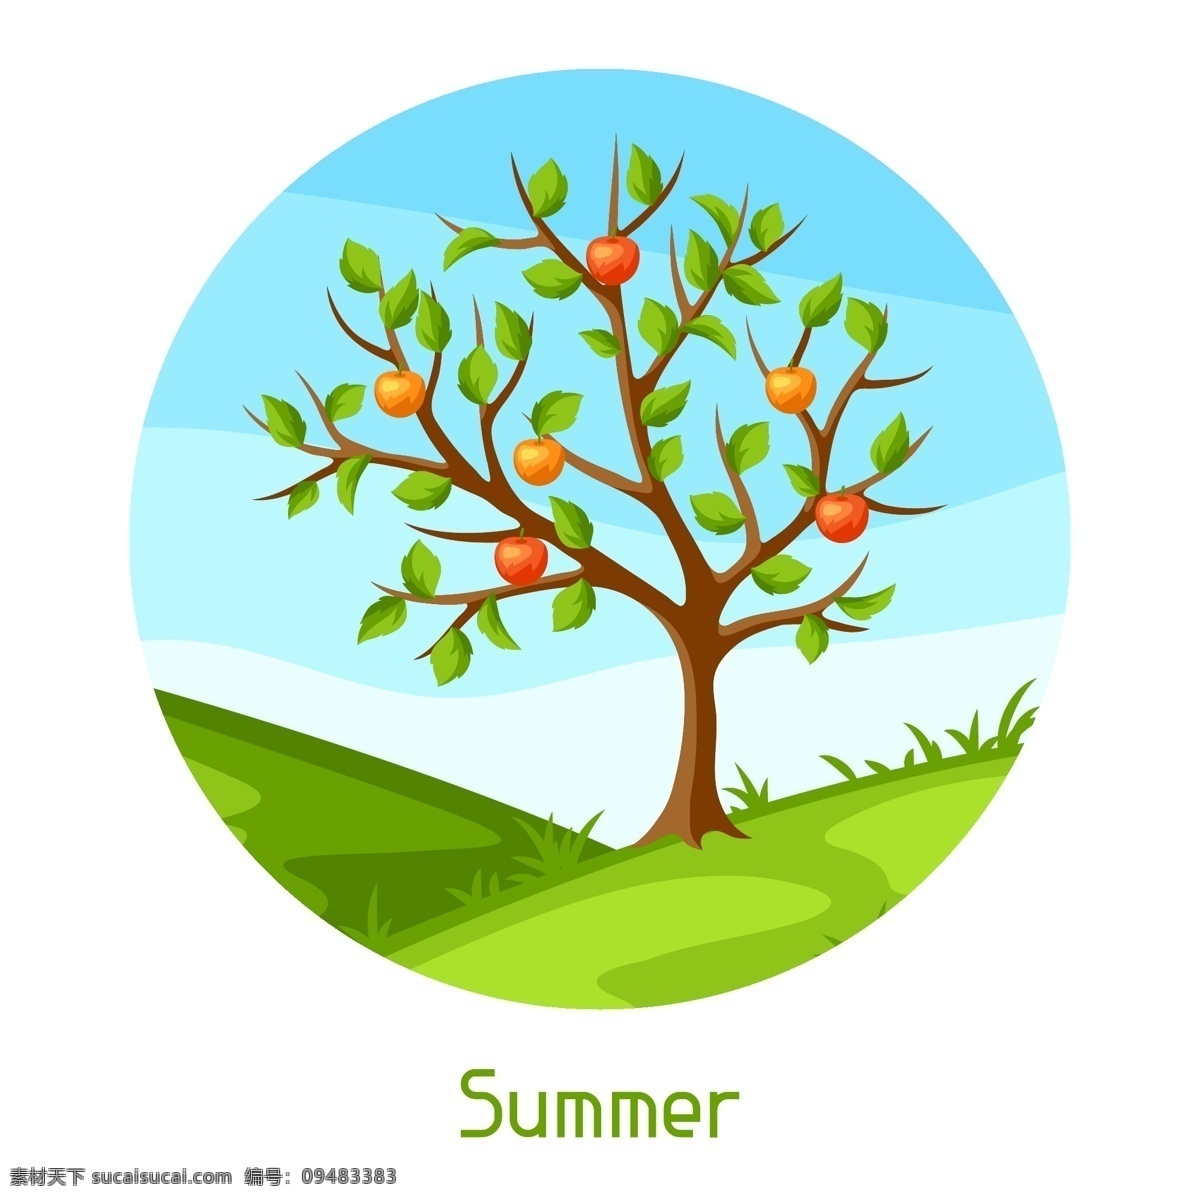 挂 满 苹果 果树 插画 水果 植物 挂满 夏天